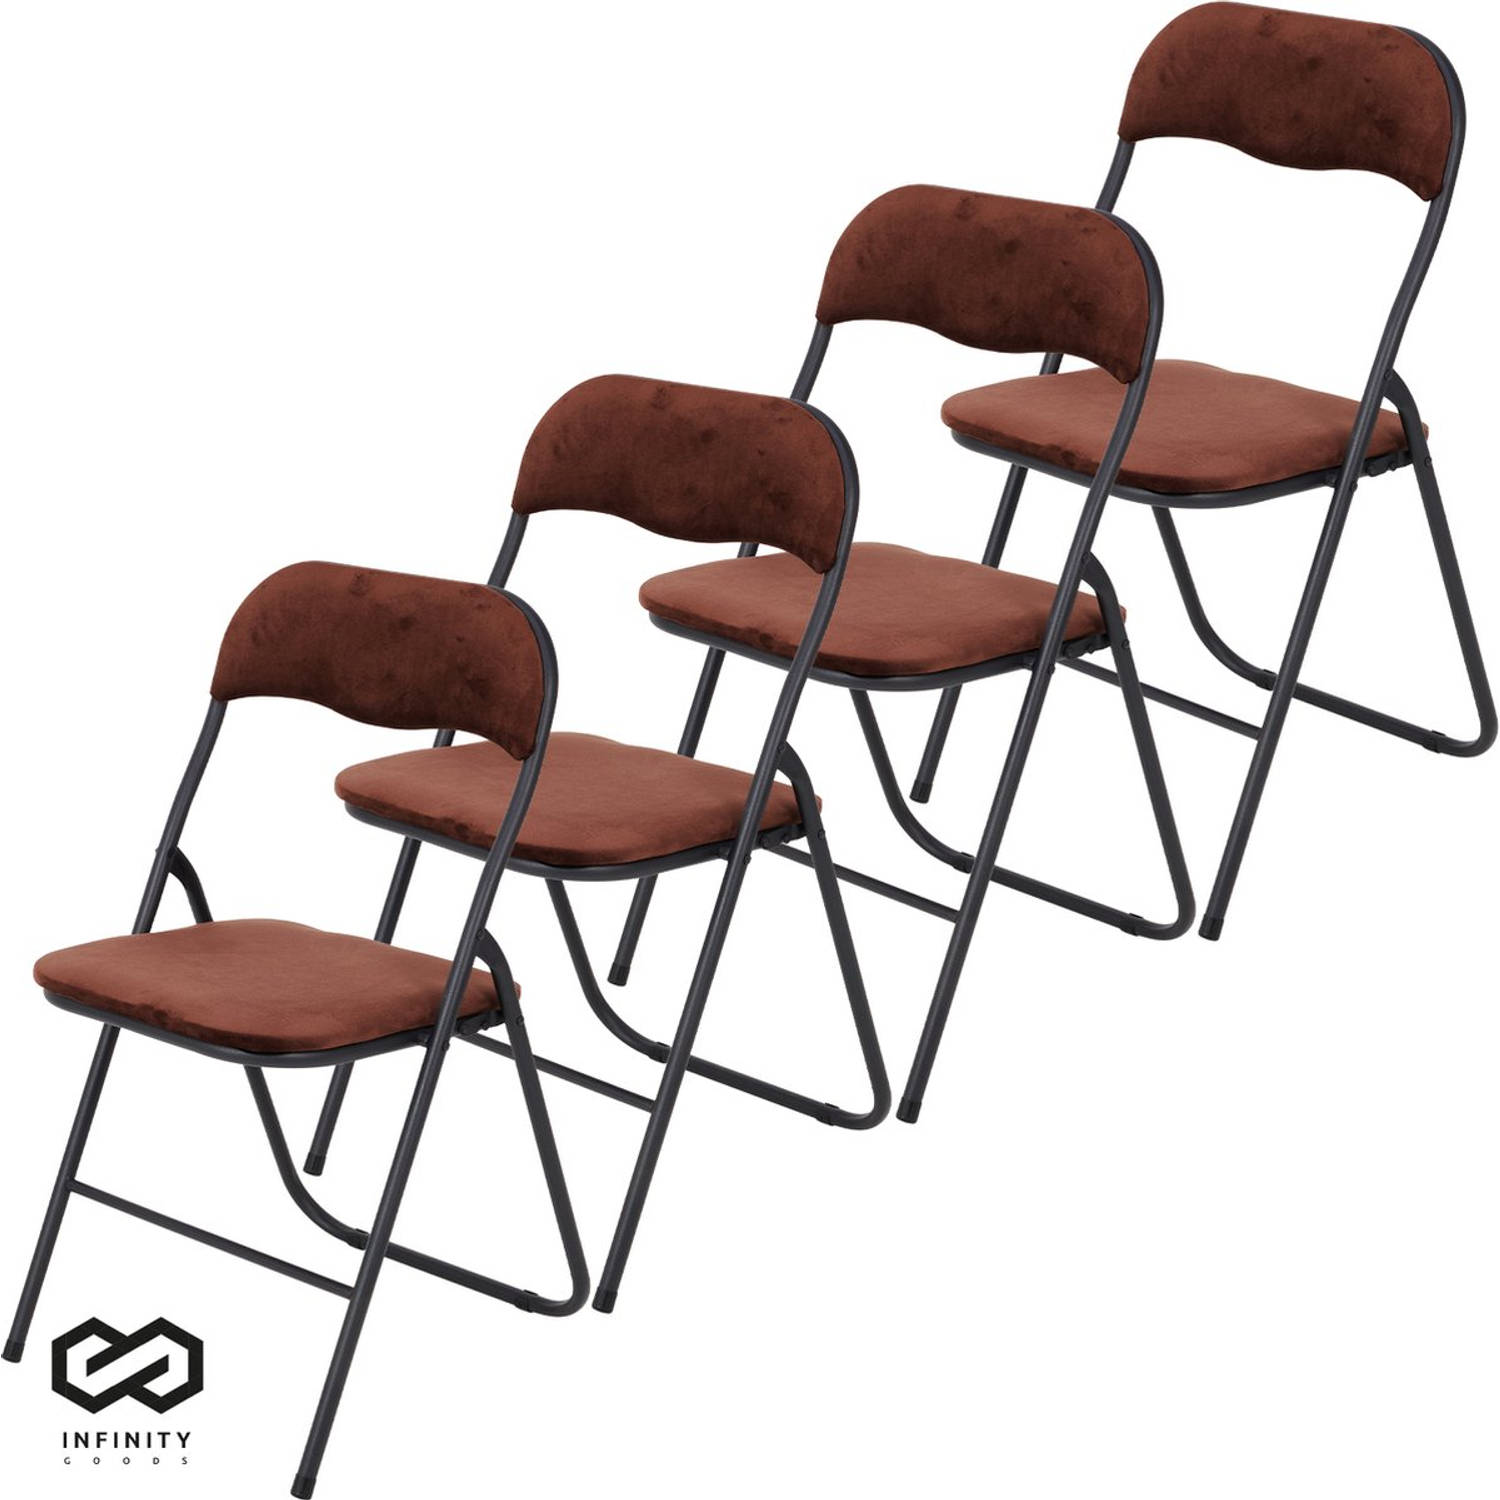 Infinity Goods Klapstoelen Set van 4 Vouwstoelen Fluweel Eettafelstoelen Opklapbare Stoelen 43 x 47 